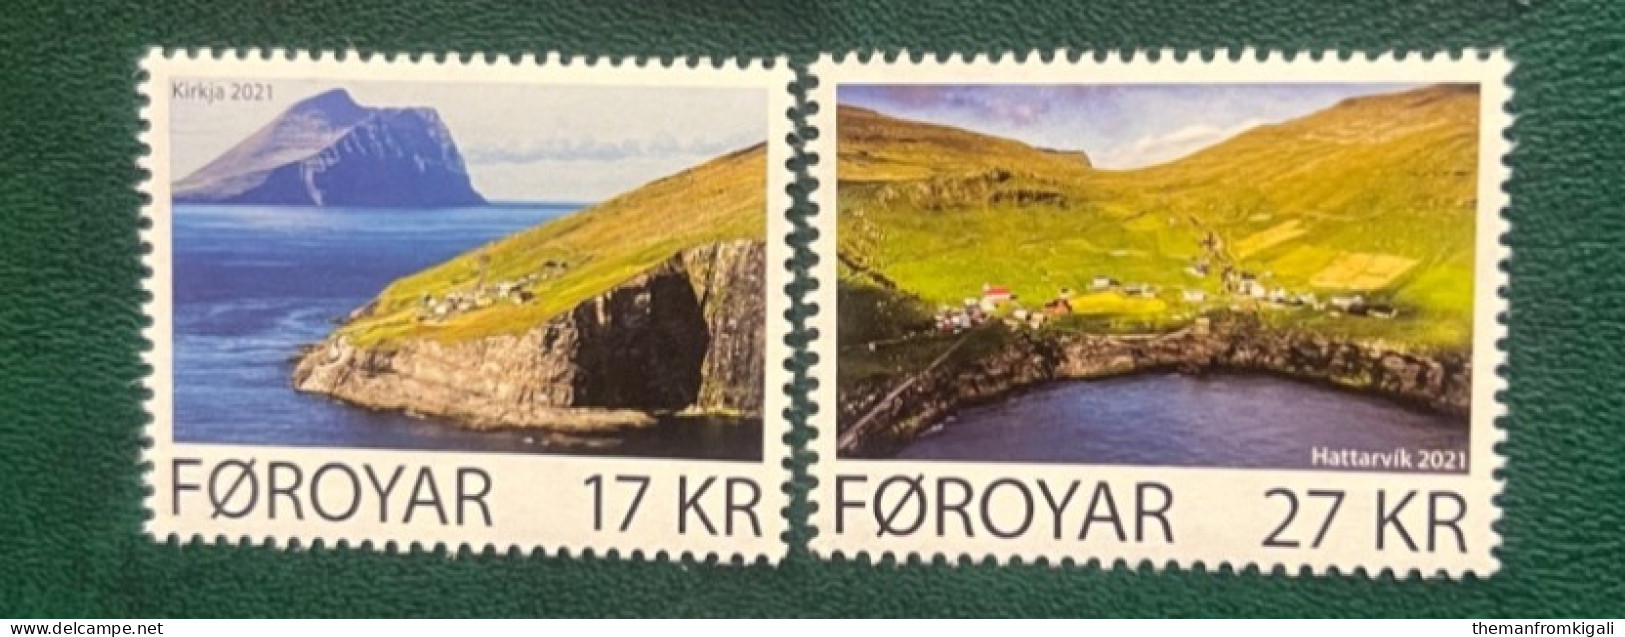 Faroe Islands 2021 Kirkja & Hattarvik - Isole Faroer